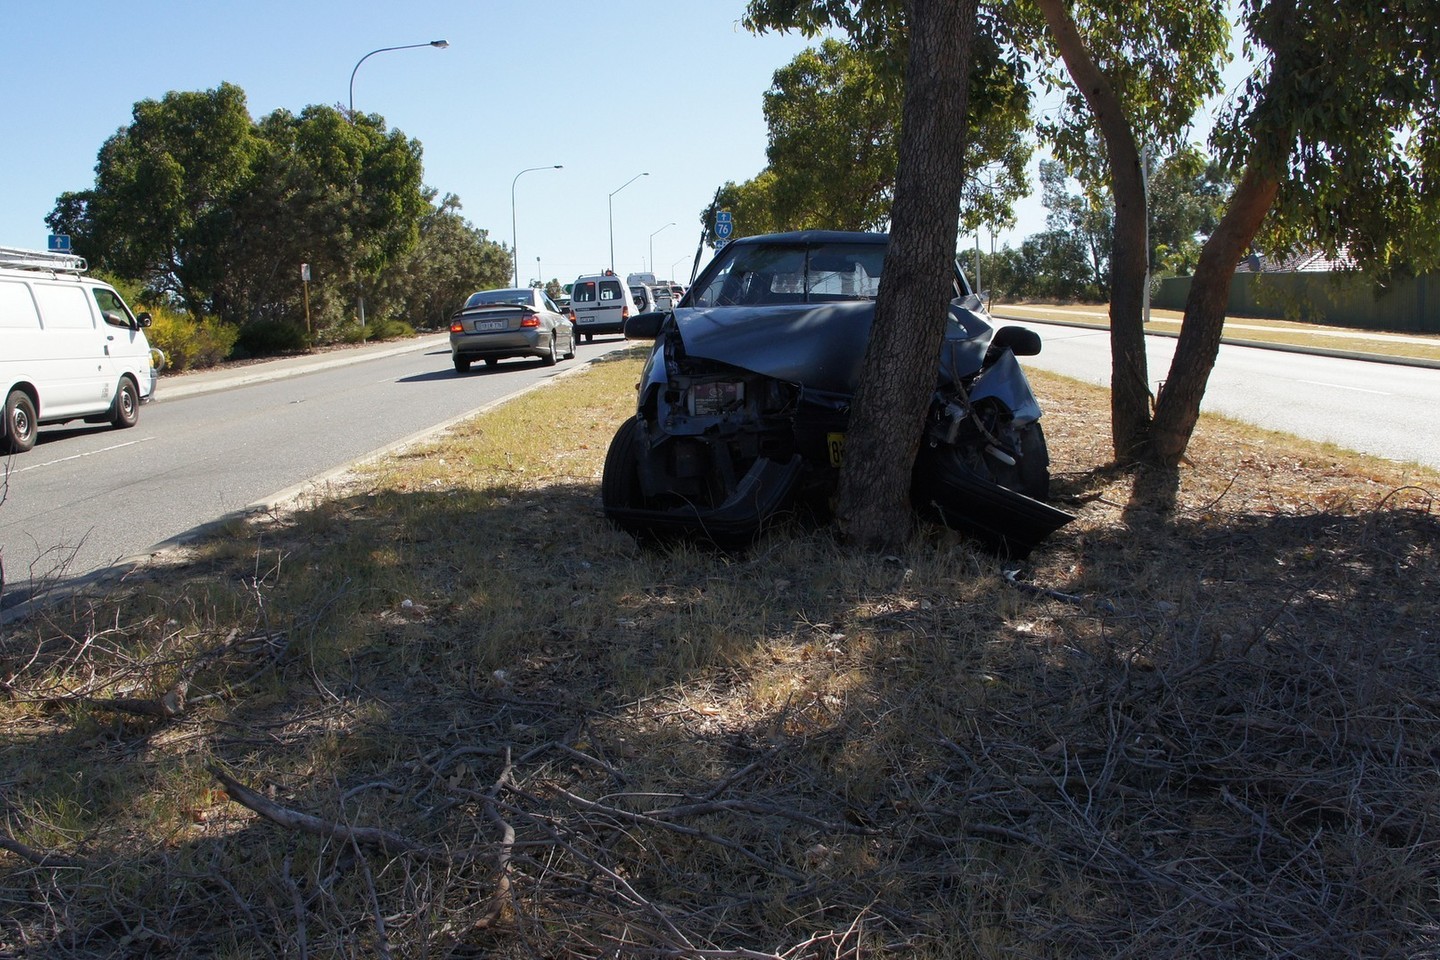 Beprotiškiausios automobilių avarijos nustebins ir visko mačiusius vairuotojus.<br>perthhdproductions/Flickr.com nuotr.